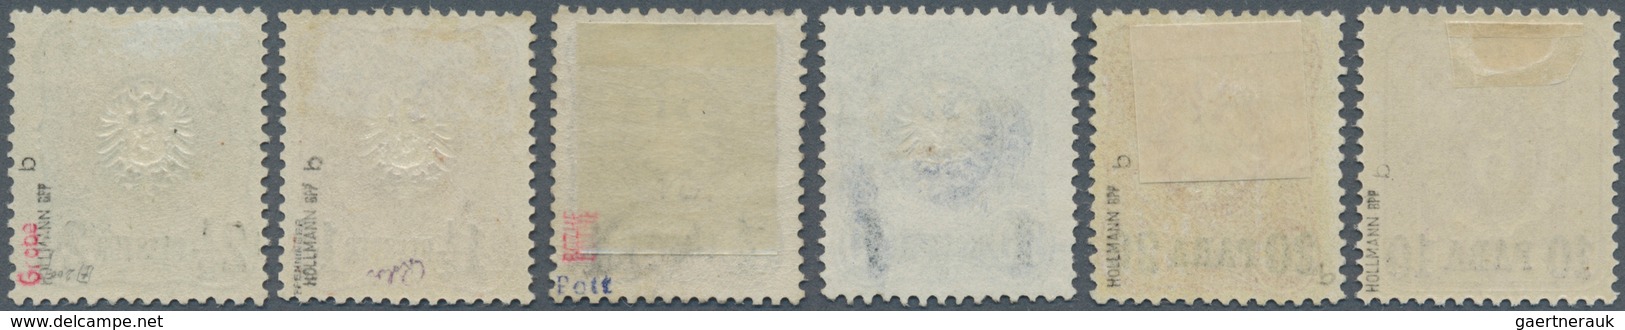 18504 Deutsche Post In Der Türkei: 1884, Freimarken Mit Aufdruck 10 PA -2 1/2 Pia Als Ungebrauchter Satz M - Turkey (offices)